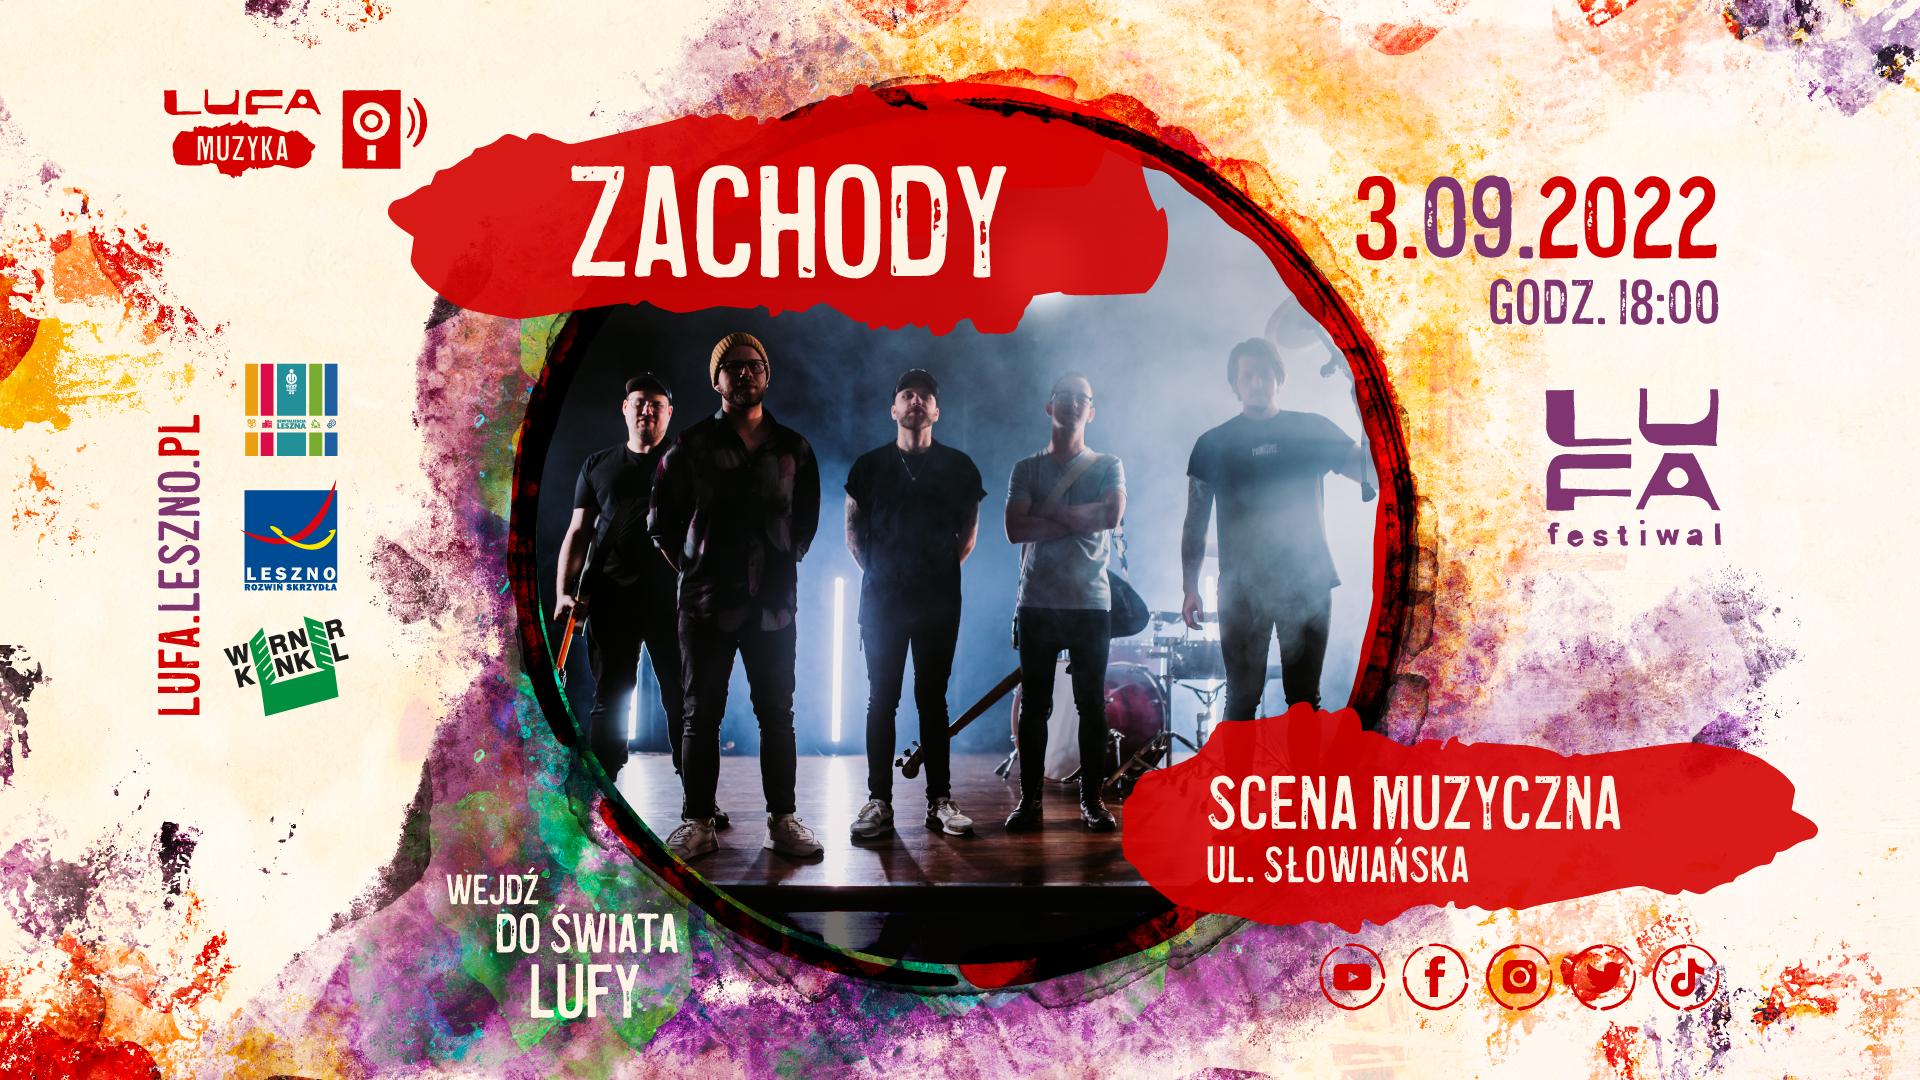 ZACHODY LUFA Festiwal 2022